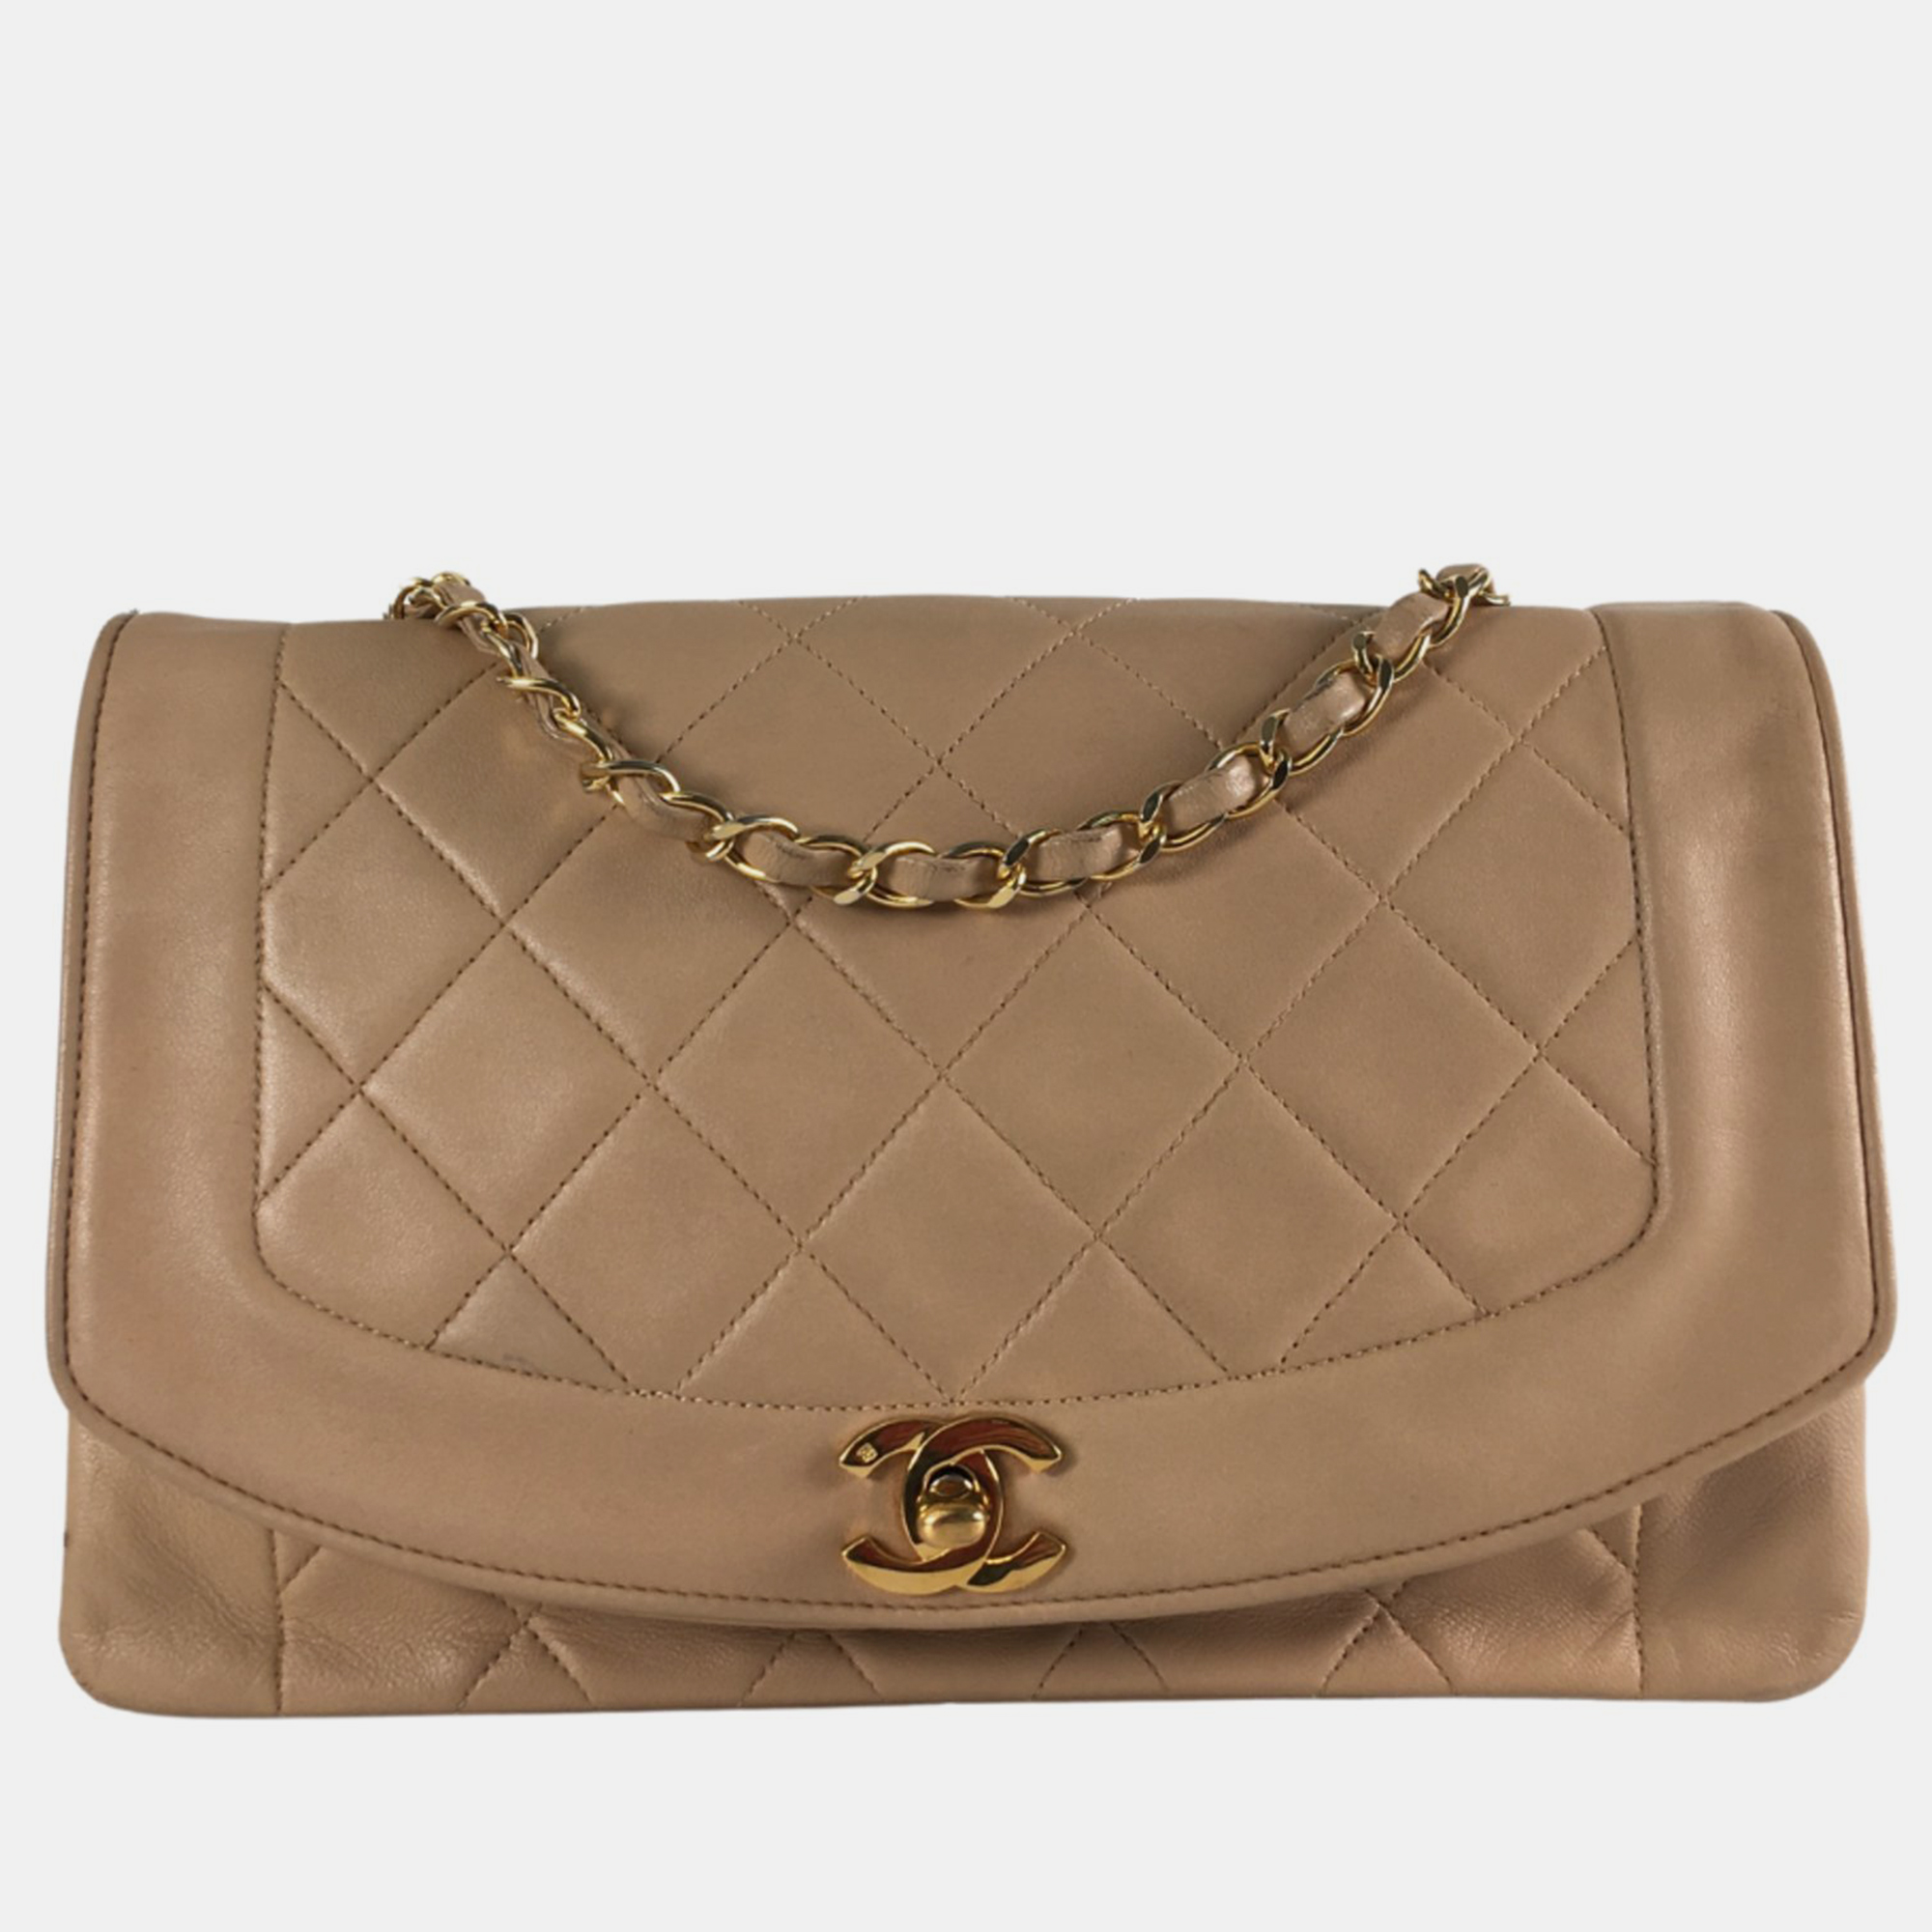 Chanel beige leather vintage diana medium shoulder bag